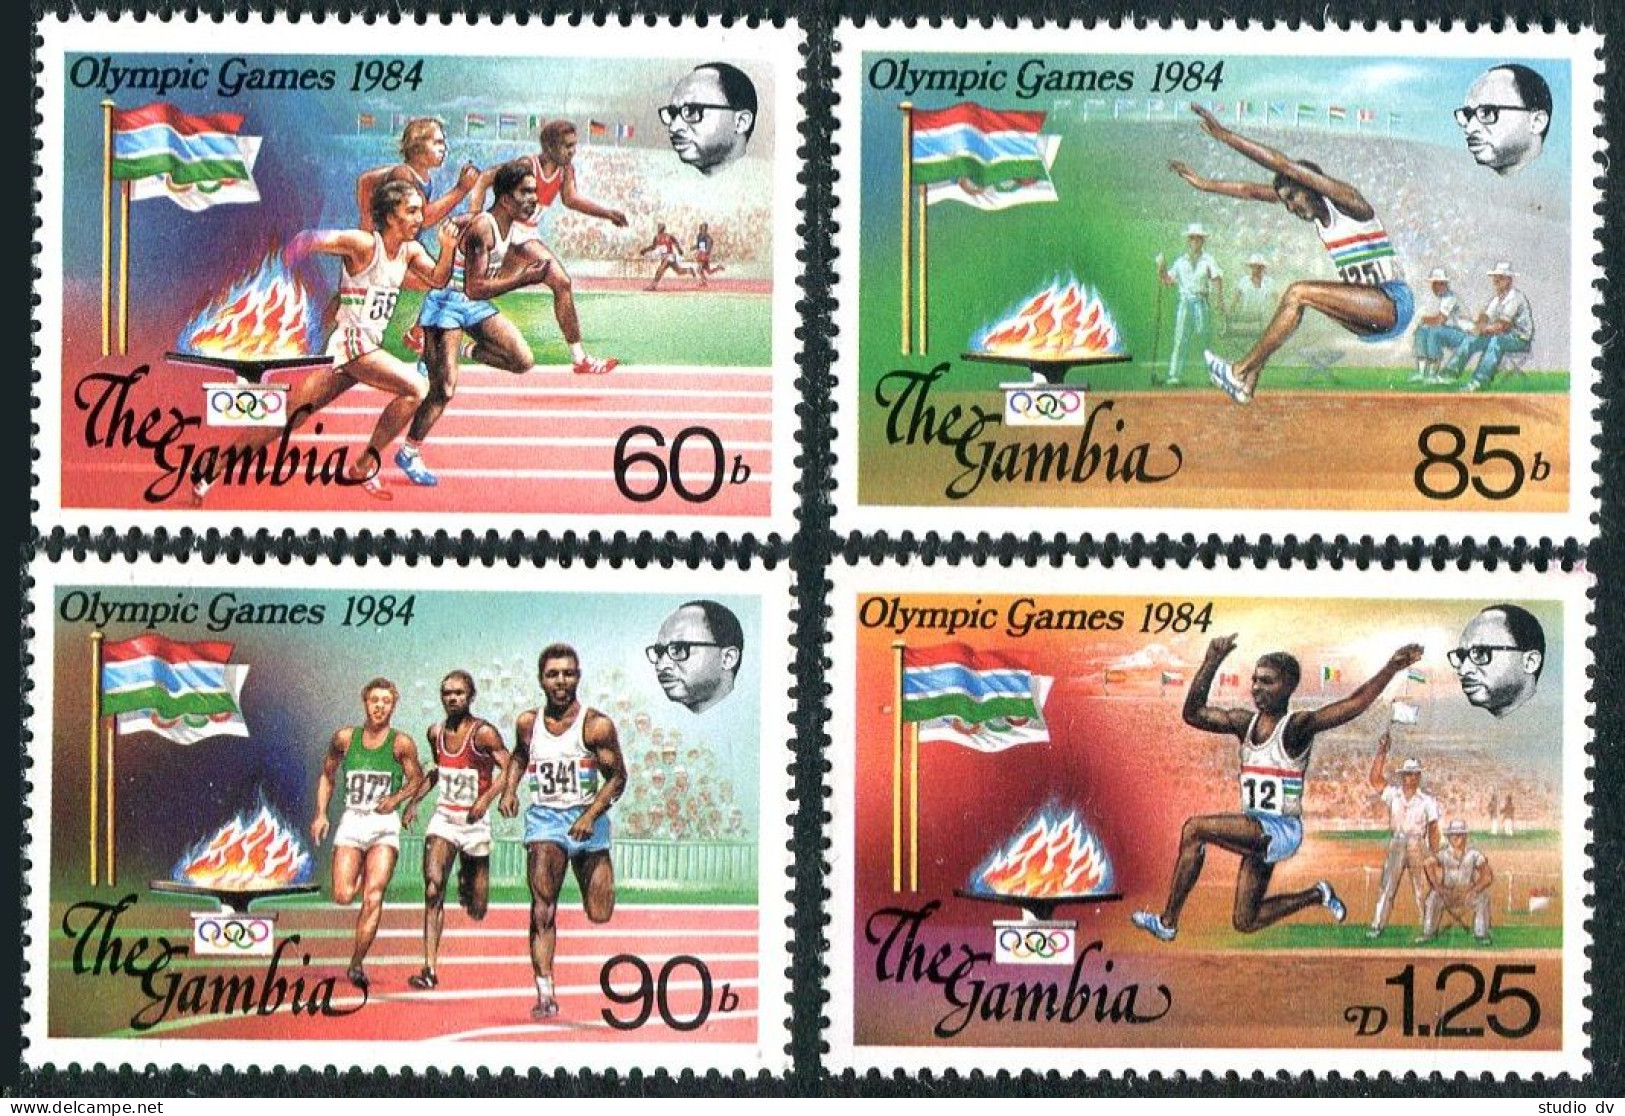 Gambia 525-528, MNH. Mi 521-524. Olympics Los Angeles-1984. Running, Long Jump. - Gambia (1965-...)